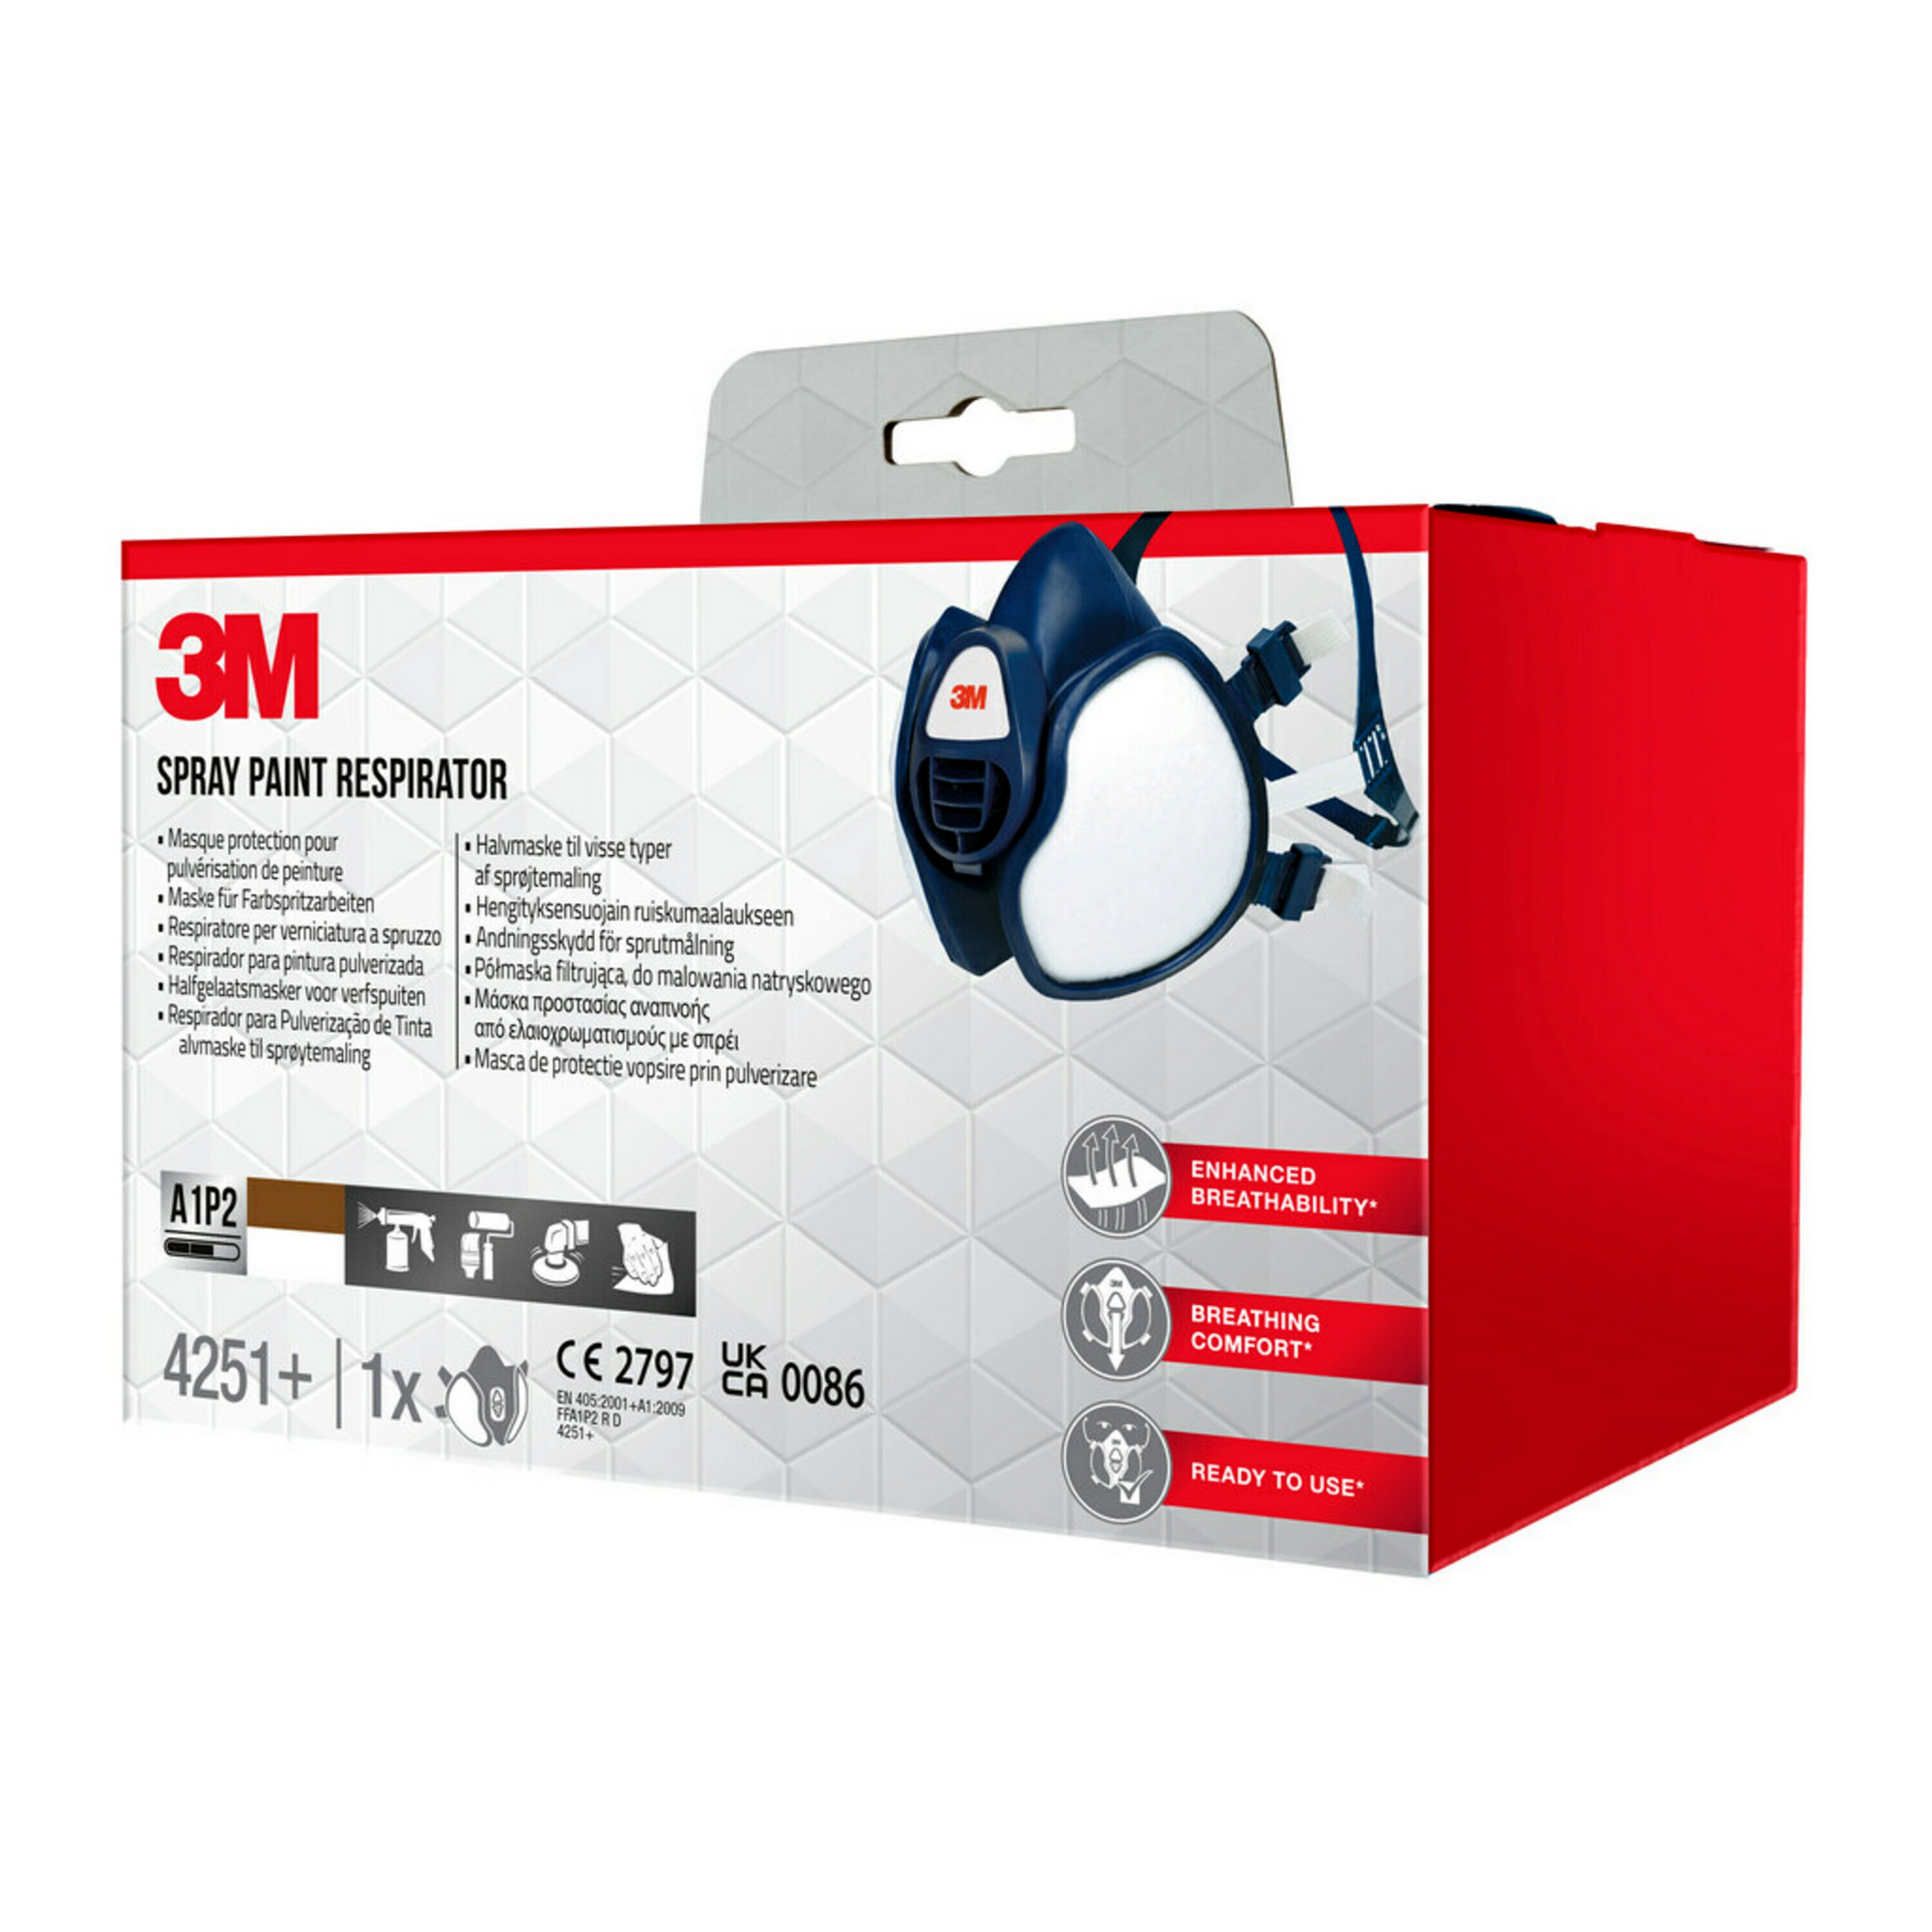 A1P2-Atemschutzmaske für Farbspritzarbeiten '4251+' 1 Stück + product picture